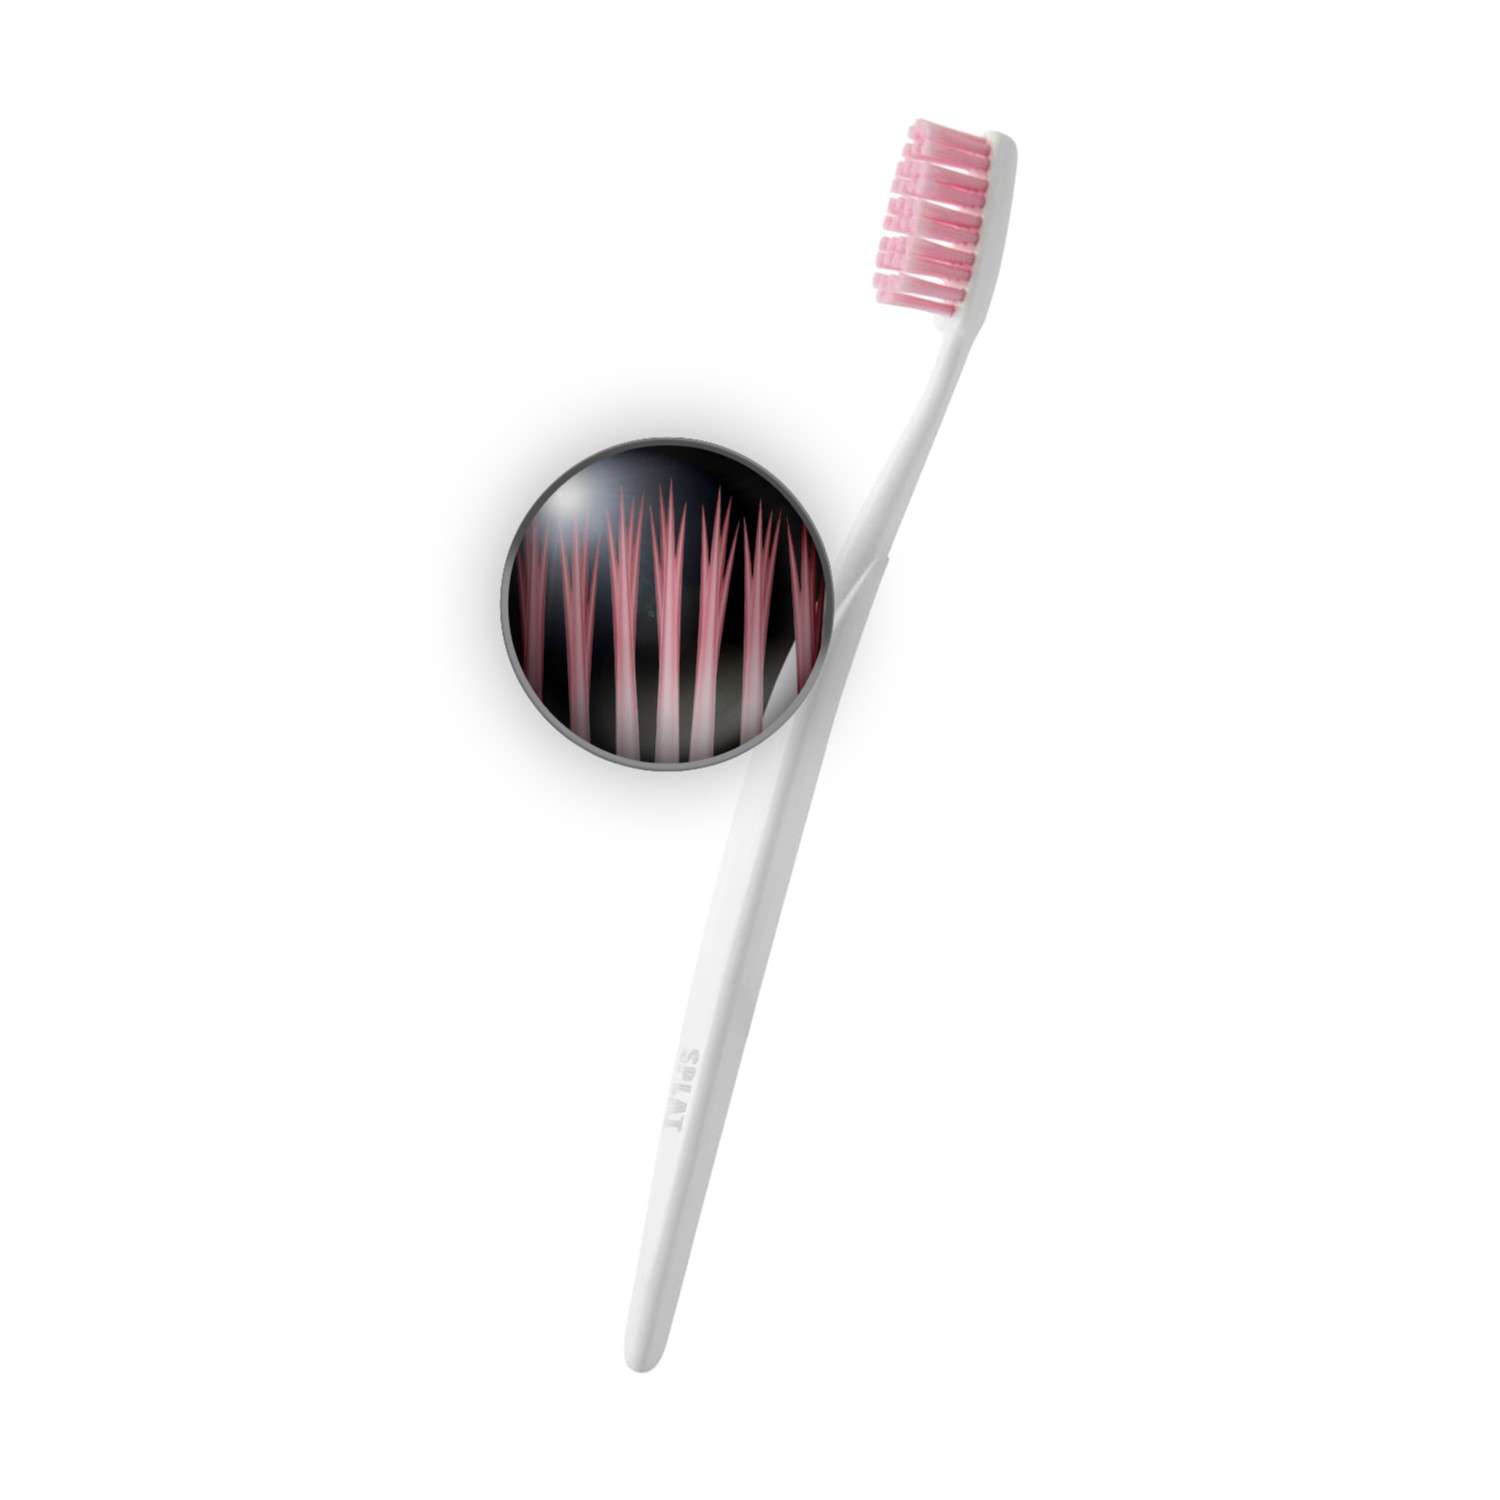 Зубная щетка Splat Sensitive мягкая в ассортименте 03.14.03.1201-02-07 - фото 3